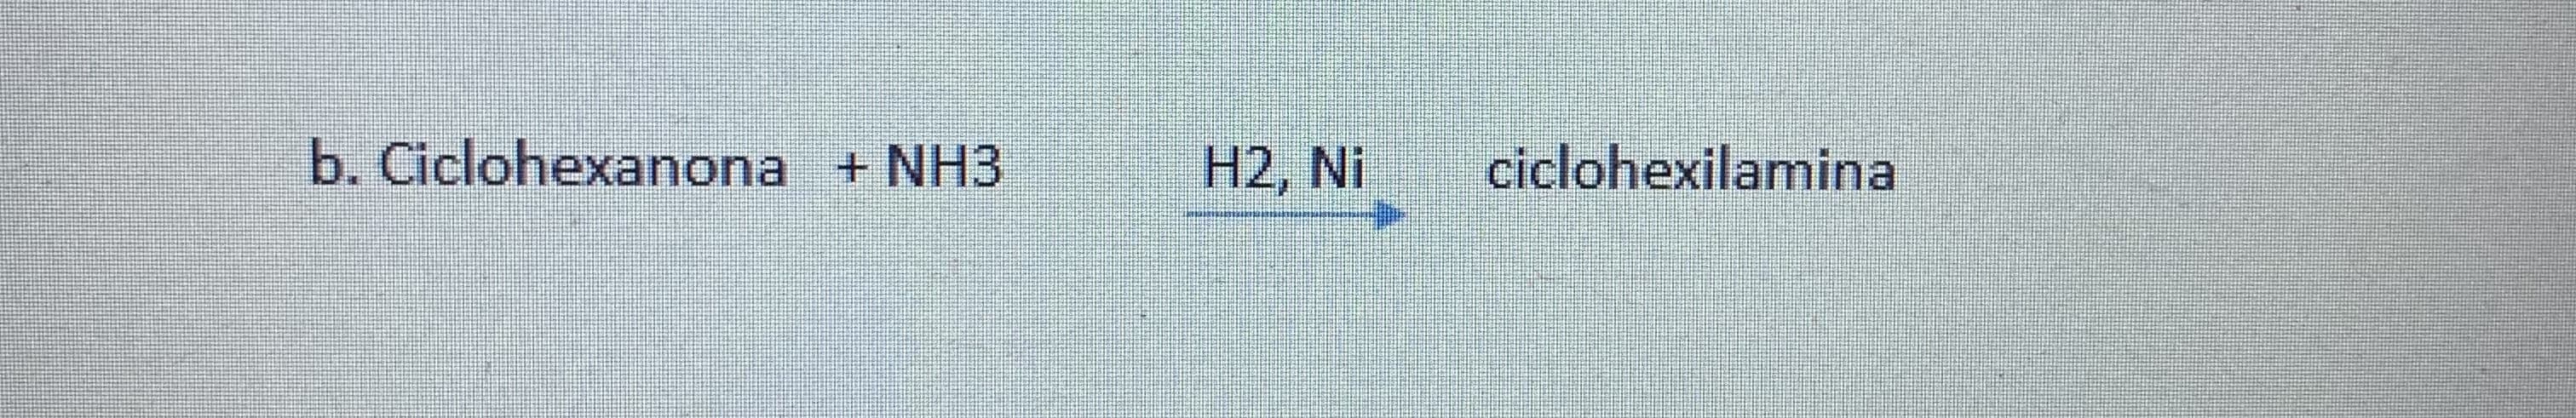 b. Ciclohexanona + NH3
H2, Ni
ciclohexilamina
